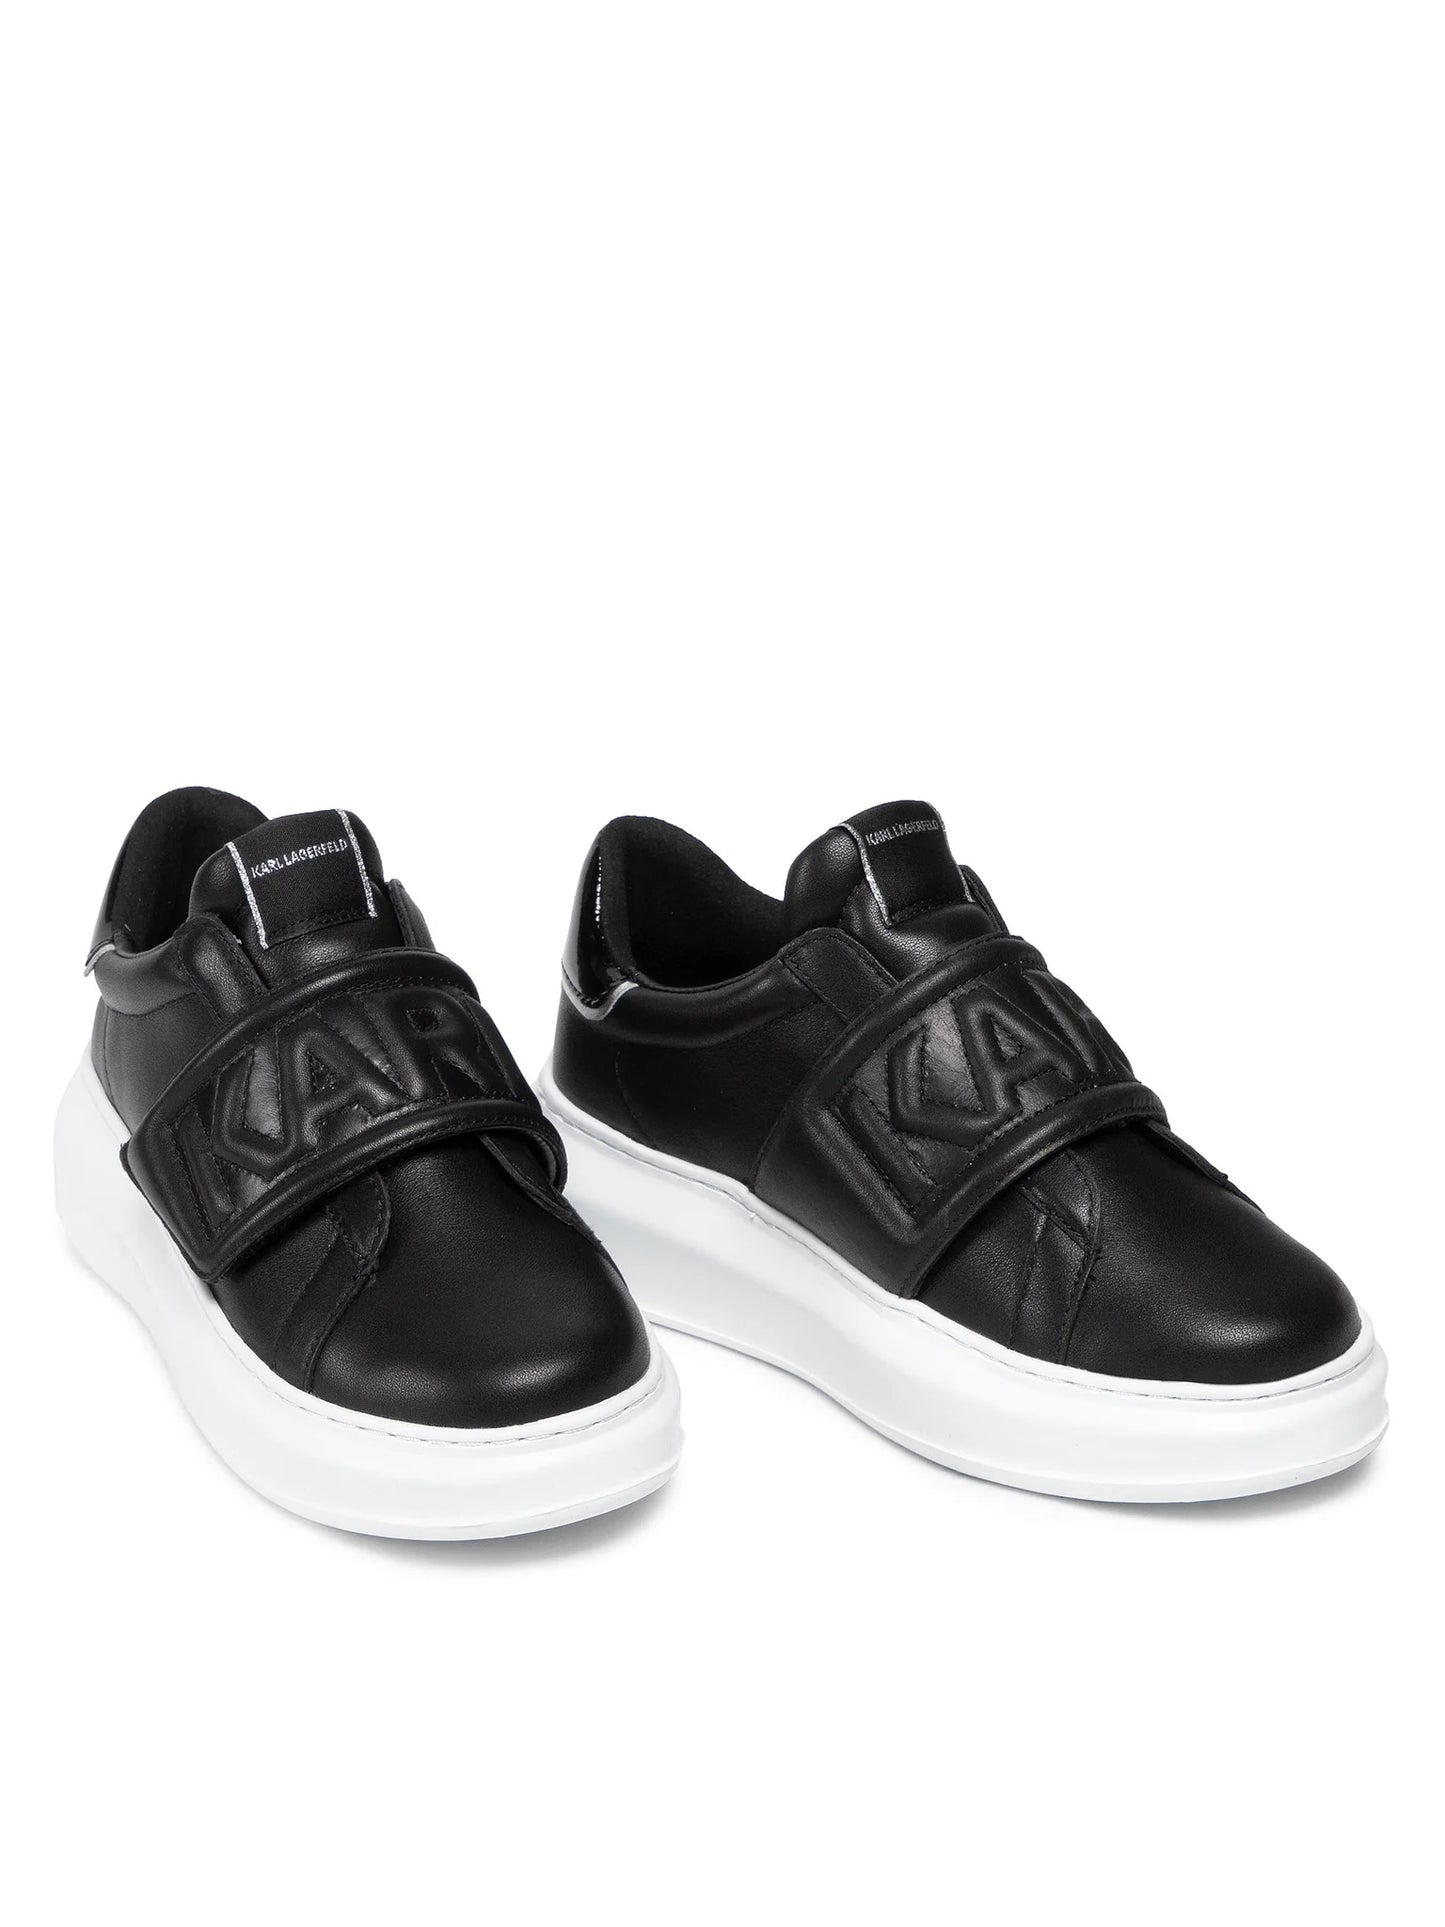 KARL LAGERFELD Sneakers KL62537 - Negru